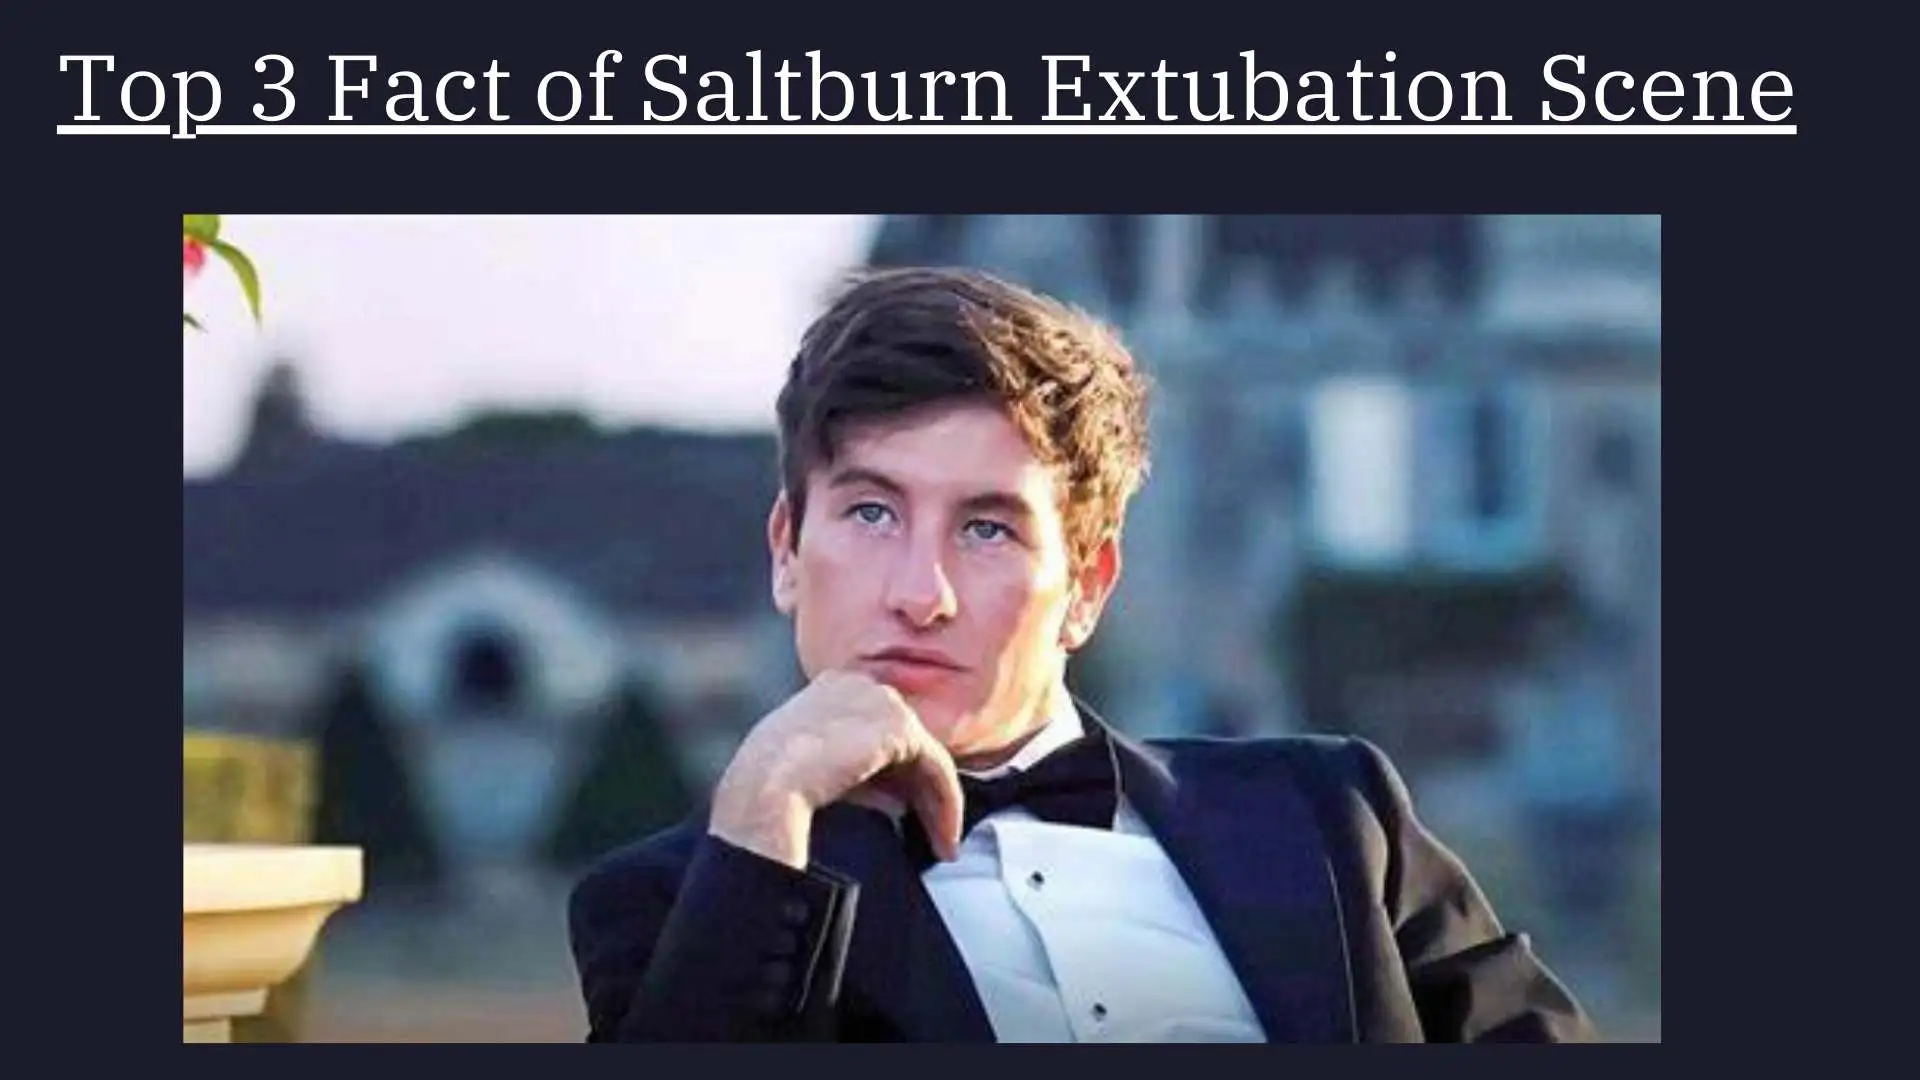 Saltburn Extubation Scene